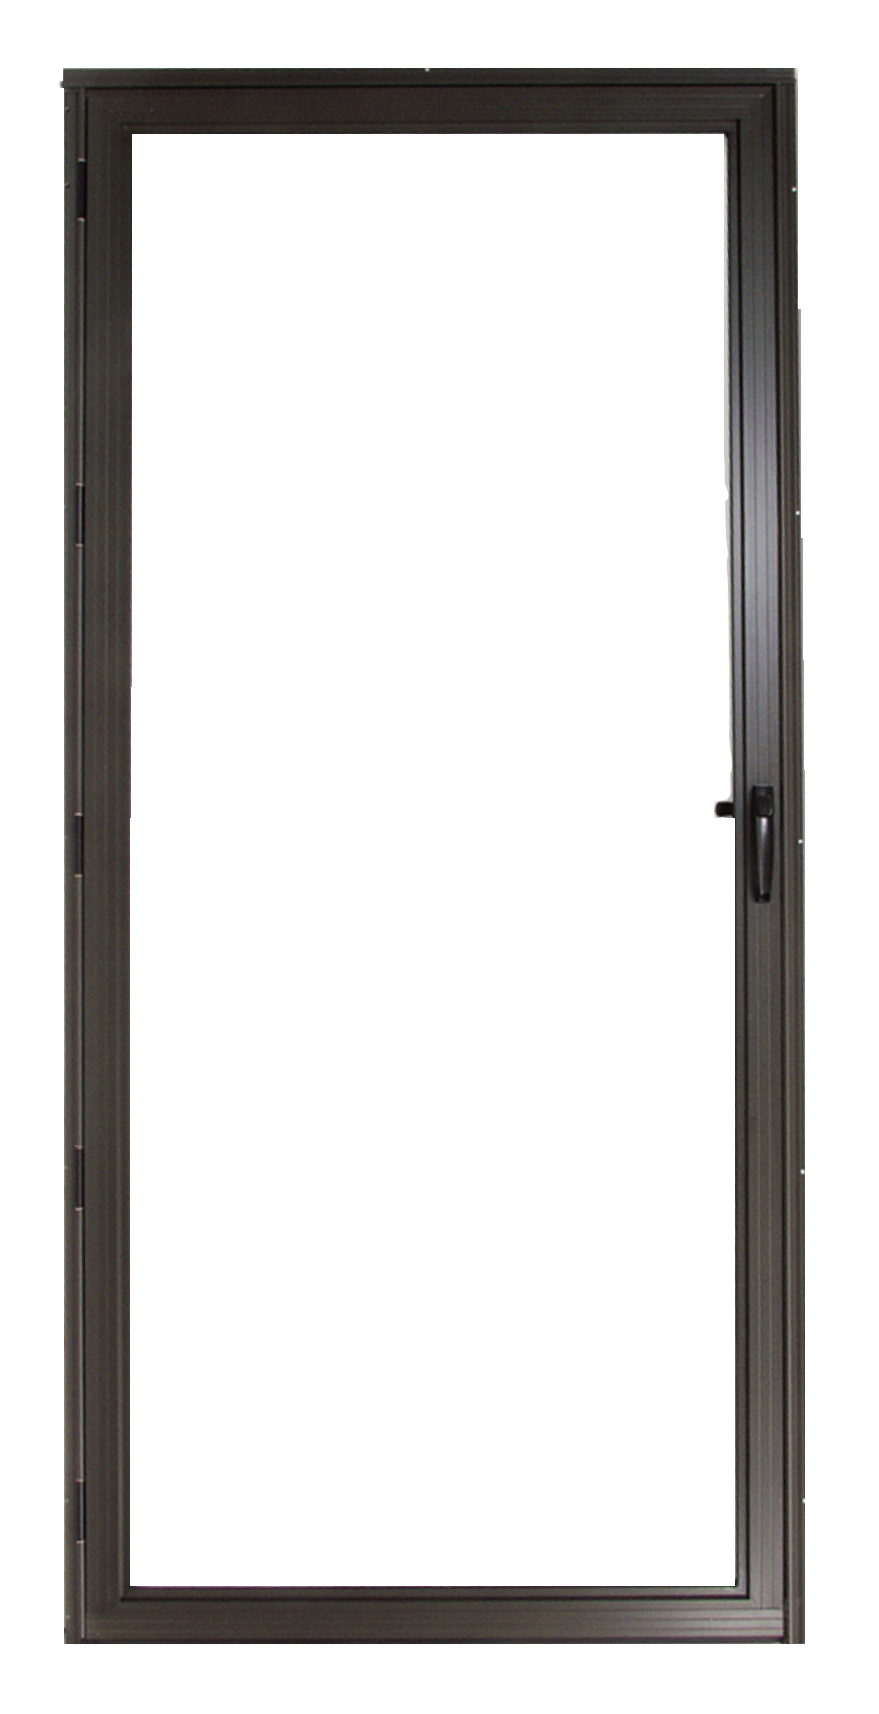 Series 2600 Classic Screen Door with Platinum Hardware